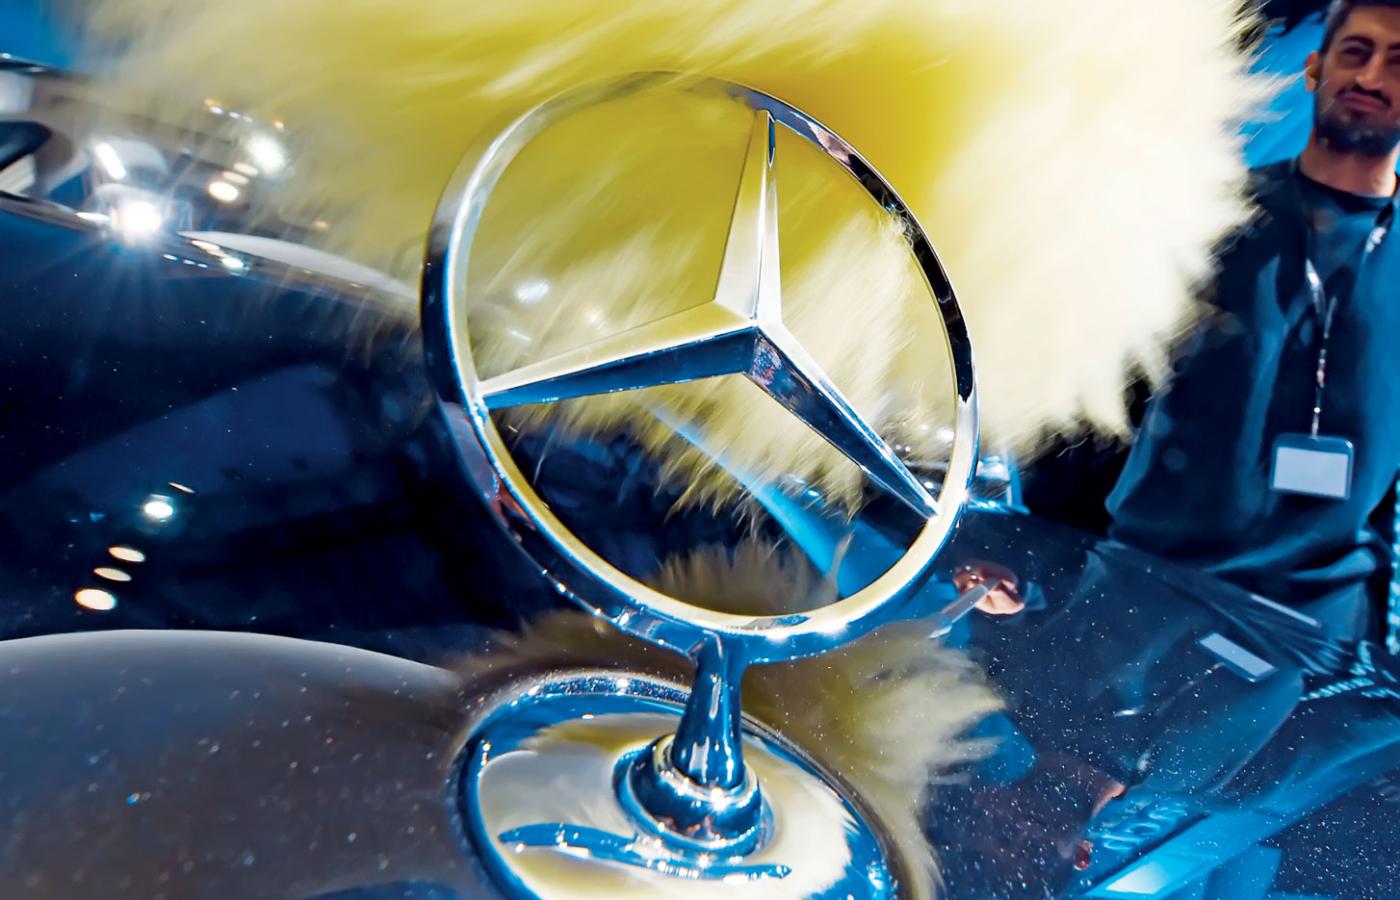 Mercedes długo zwlekał z przenoszeniem produkcji do krajów o niższych kosztach, tak jak zrobiła większość zachodnioeuropejskich koncernów.